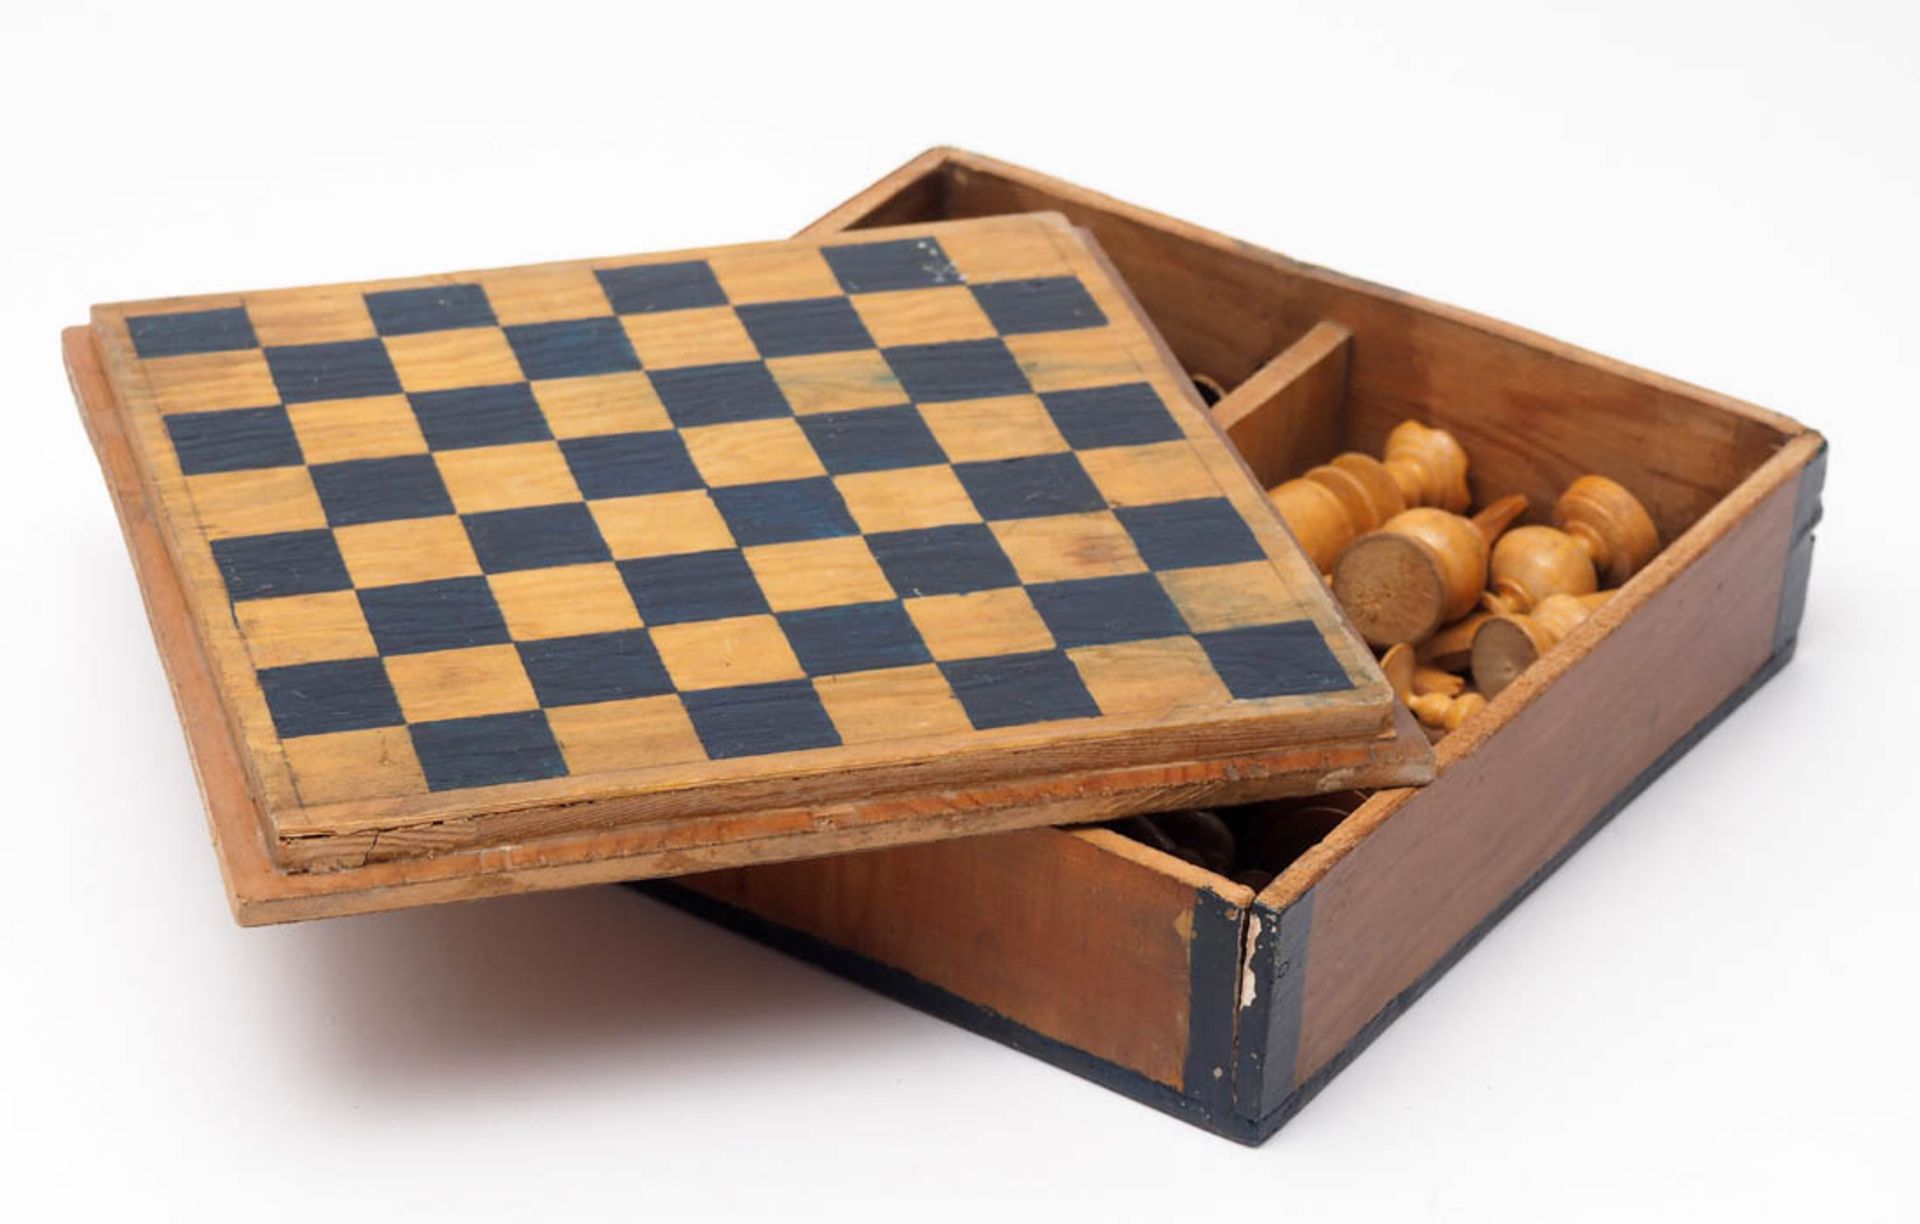 Schachspiel Quadratischer Holzkasten, 5x18x18cm. Innenseite des Deckels als Schachbrett. - Bild 5 aus 6